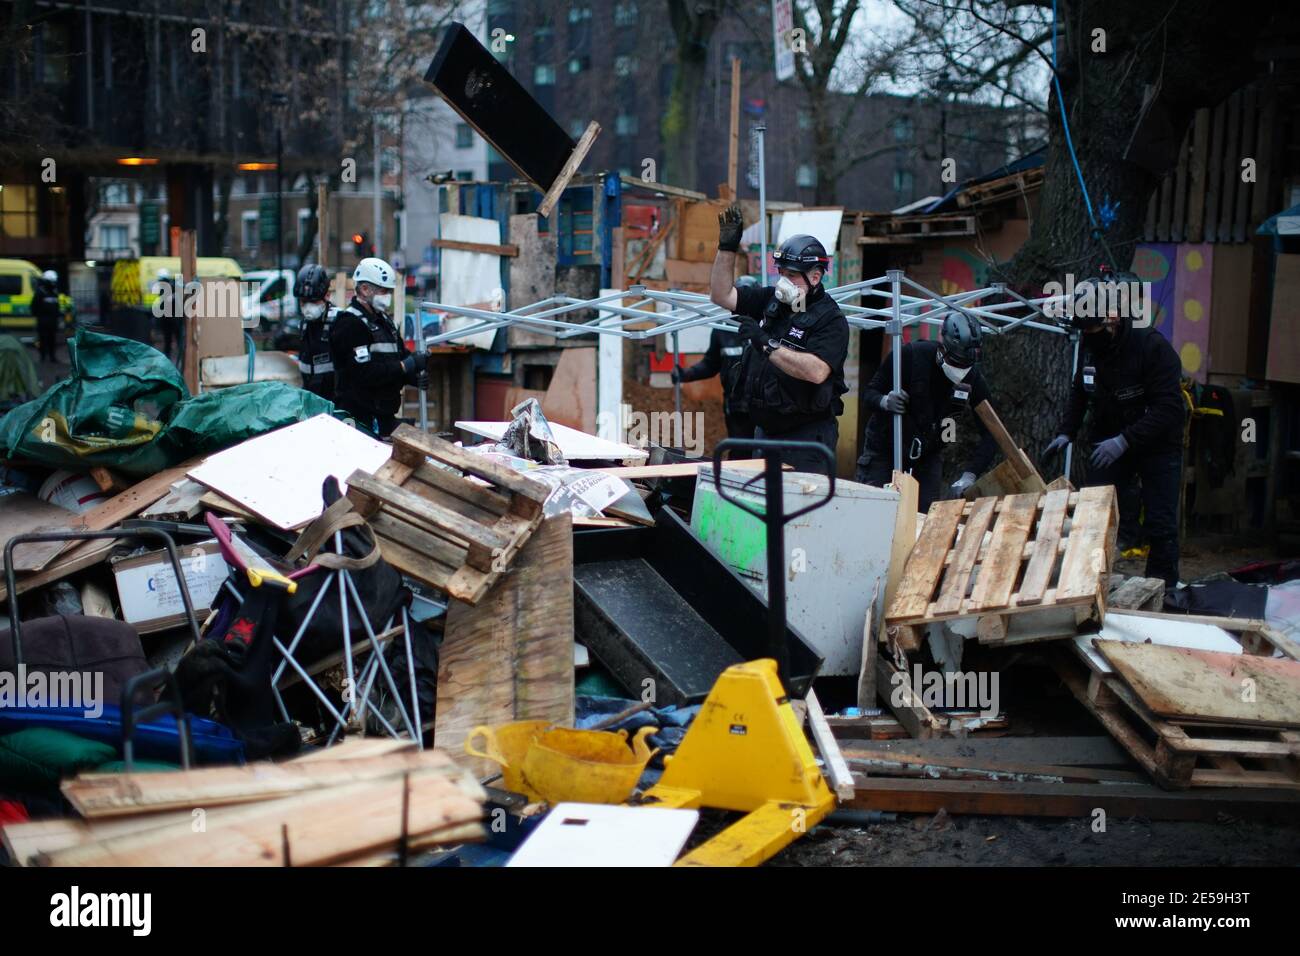 Los agentes de policía se trasladan al campamento de Euston Square Gardens en el centro de Londres, donde los manifestantes de la rebelión HS2 han construido una red de túneles de 100 pies, que están listos para ocupar, después de afirmar que el jardín está en riesgo por el desarrollo de la línea HS2. Foto fecha: Miércoles 27 de enero de 2021. Foto de stock